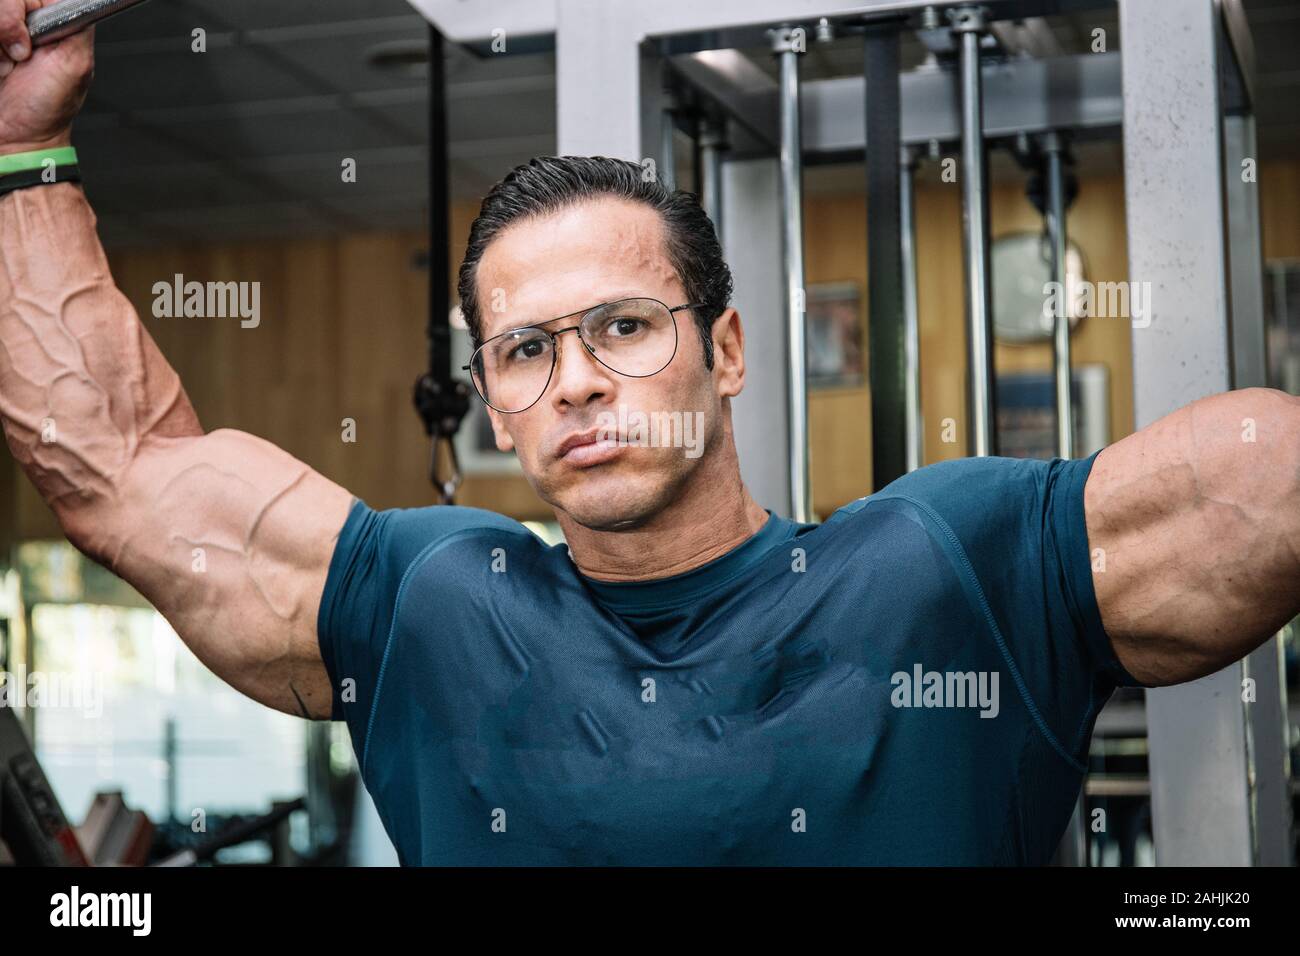 Foto Detail der das Gesicht eines Mannes Stärke tun mit Brille, bodybuilding  Übungen. Sport Konzept Stockfotografie - Alamy